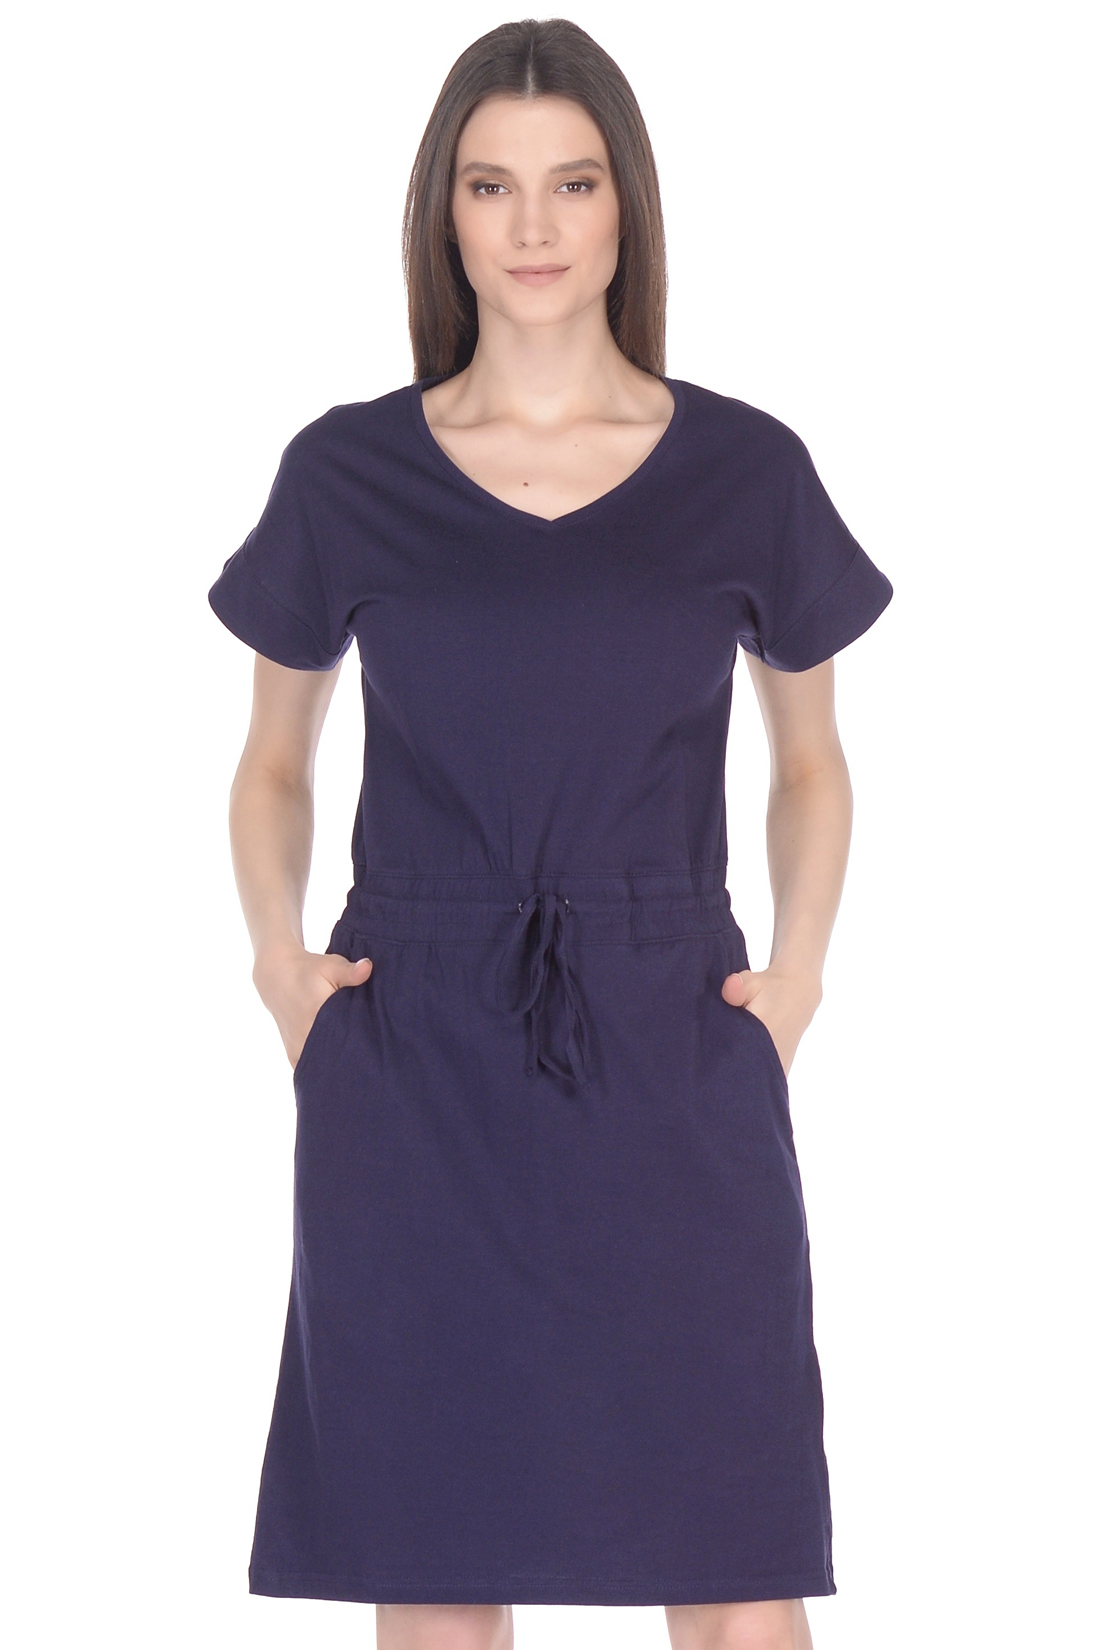 Пляжное платье из трикотажа (арт. baon B458114), размер XXL, цвет синий Пляжное платье из трикотажа (арт. baon B458114) - фото 3